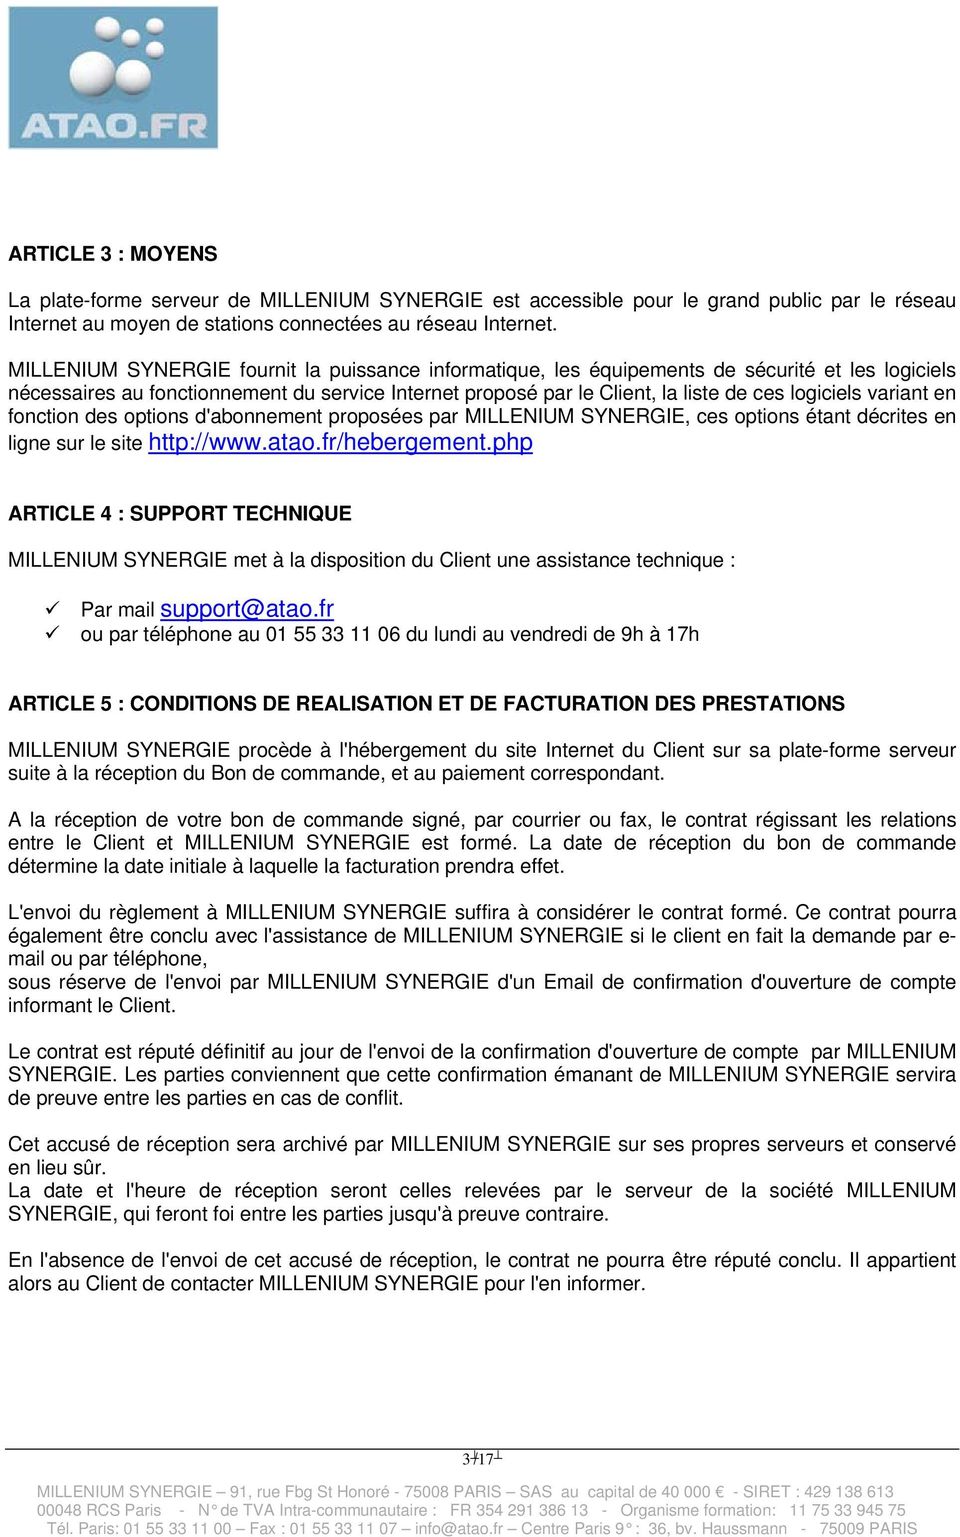 variant en fonction des options d'abonnement proposées par MILLENIUM SYNERGIE, ces options étant décrites en ligne sur le site http://www.atao.fr/hebergement.